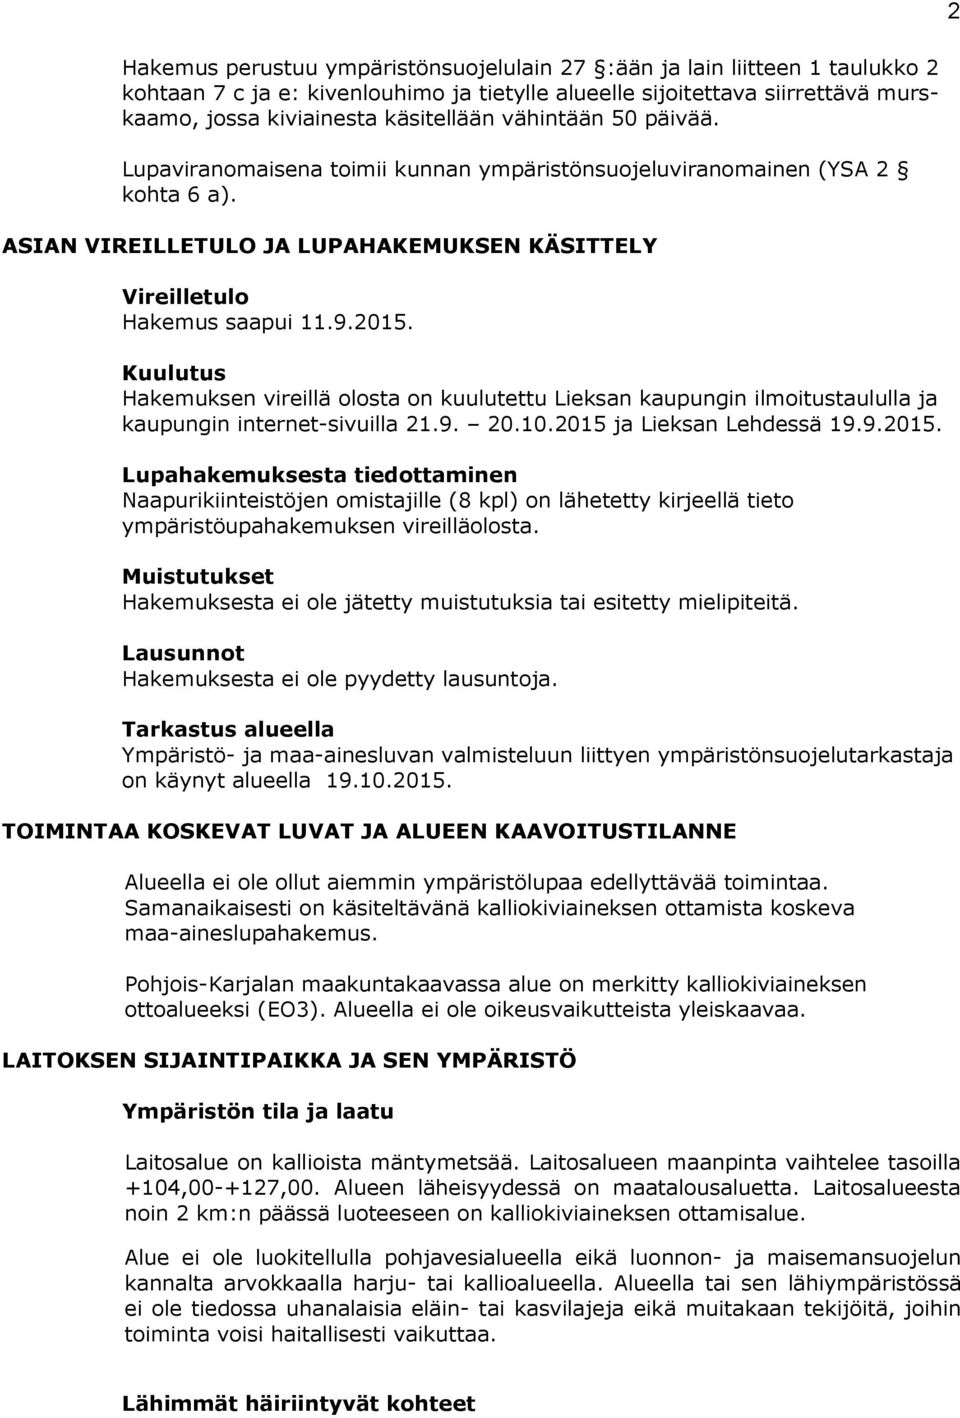 Kuulutus Hakemuksen vireillä olosta on kuulutettu Lieksan kaupungin ilmoitustaululla ja kau pun gin internet-sivuilla 21.9. 20.10.2015 